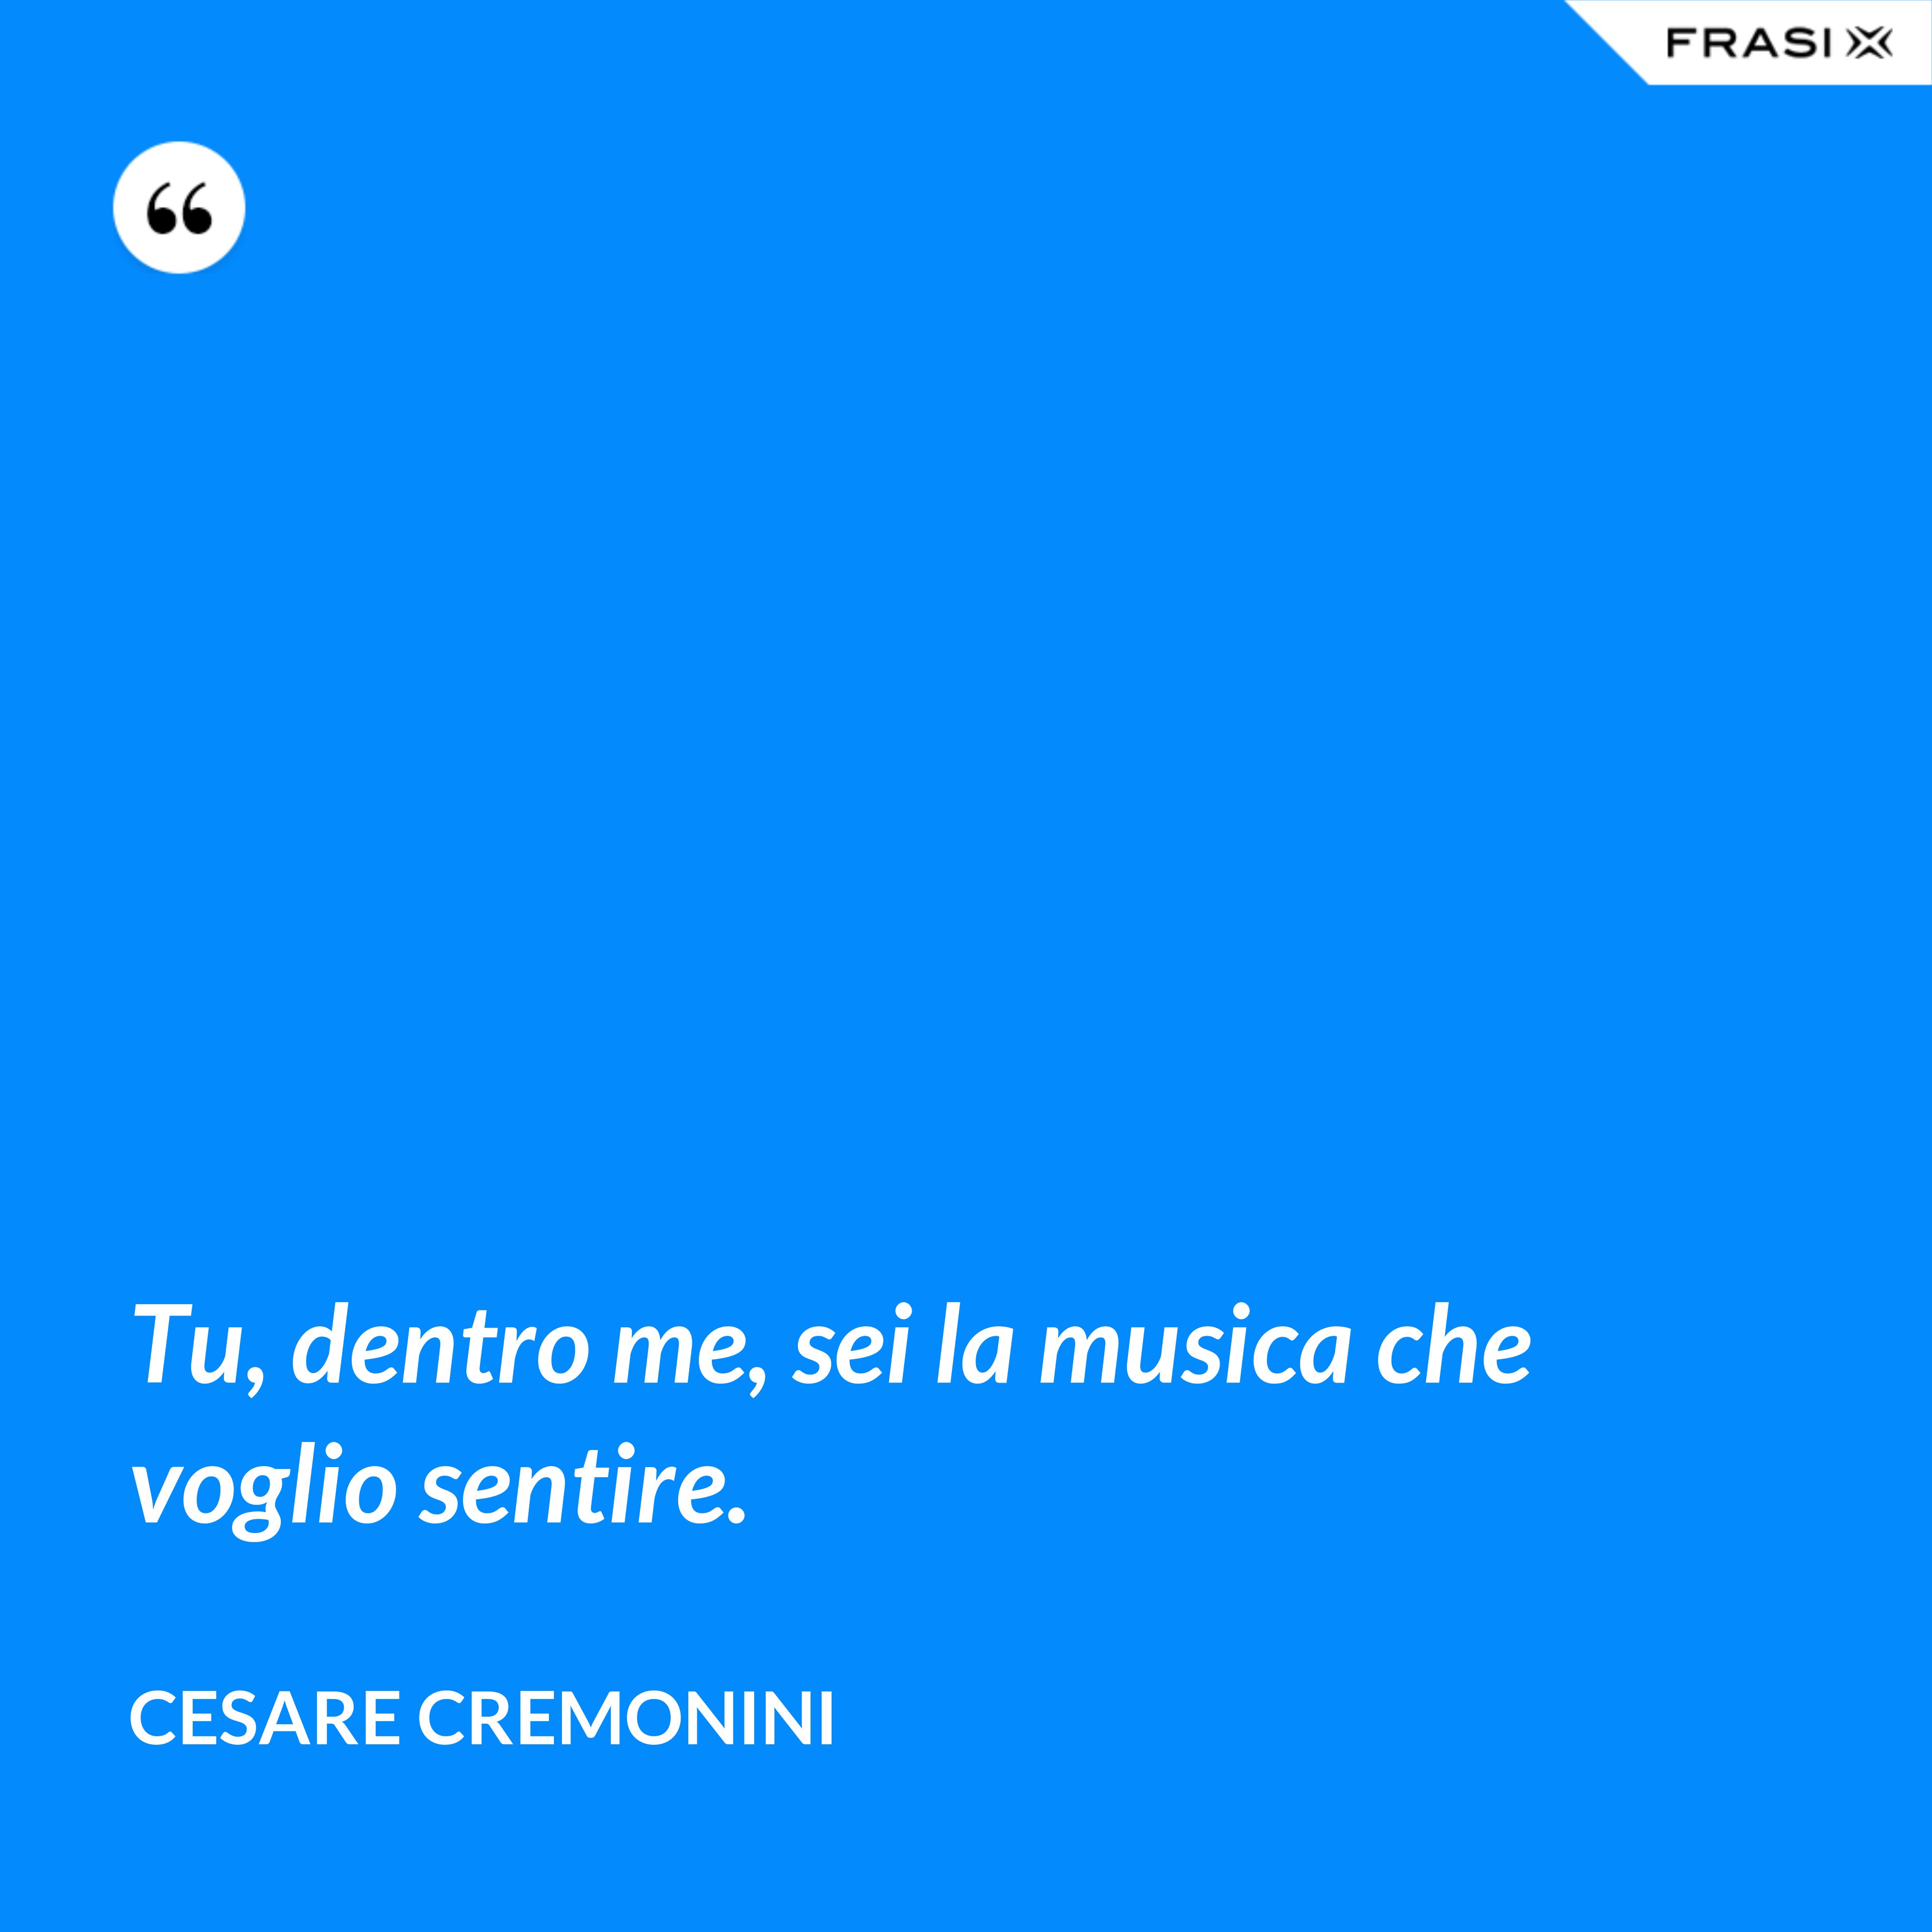 Tu, dentro me, sei la musica che voglio sentire. - Cesare Cremonini